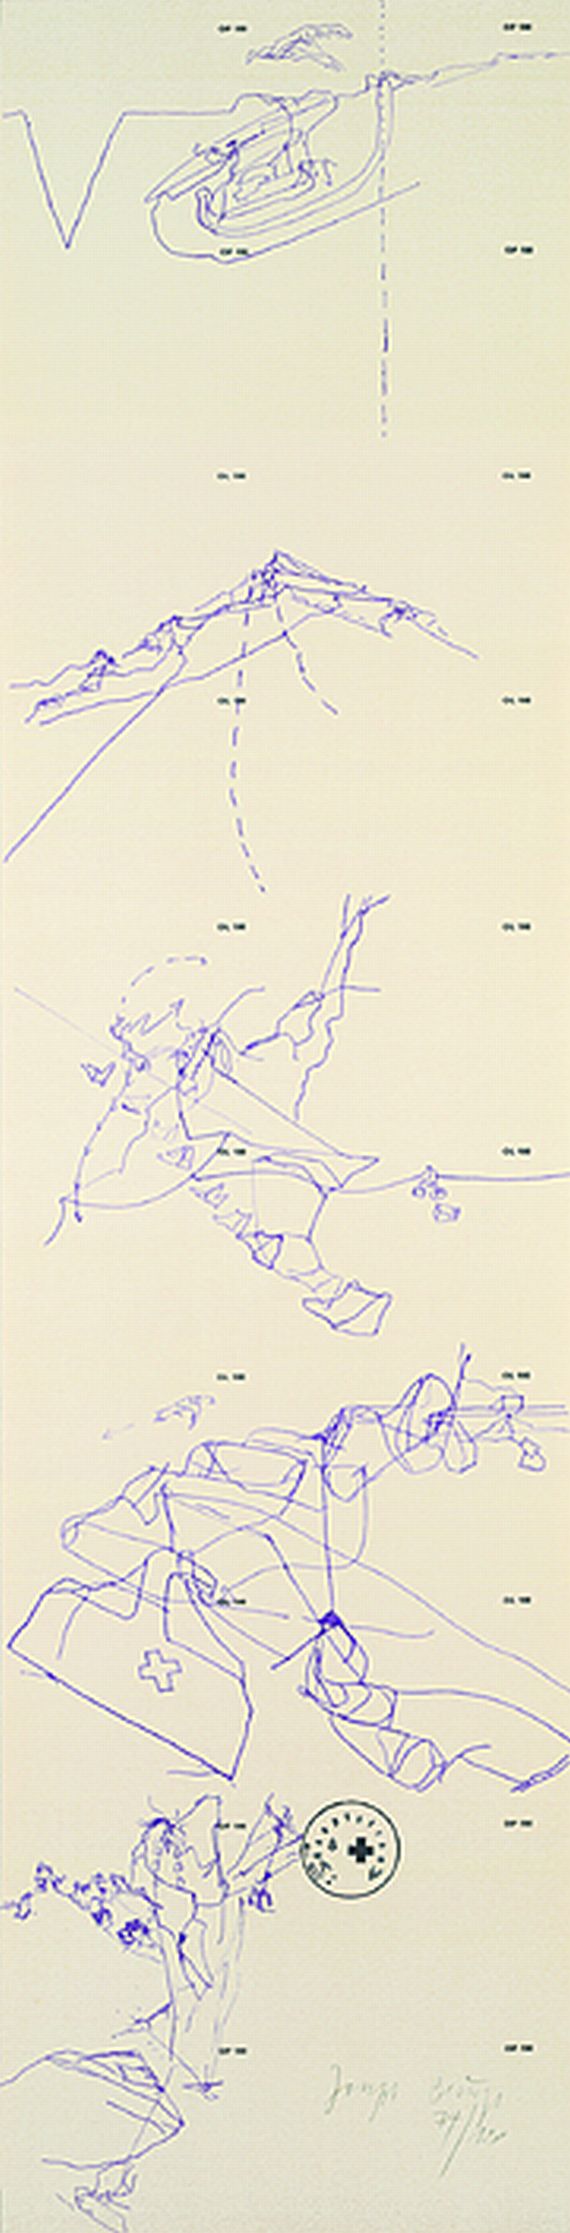 Joseph Beuys - Flug des Adlers ins Tal und zurück